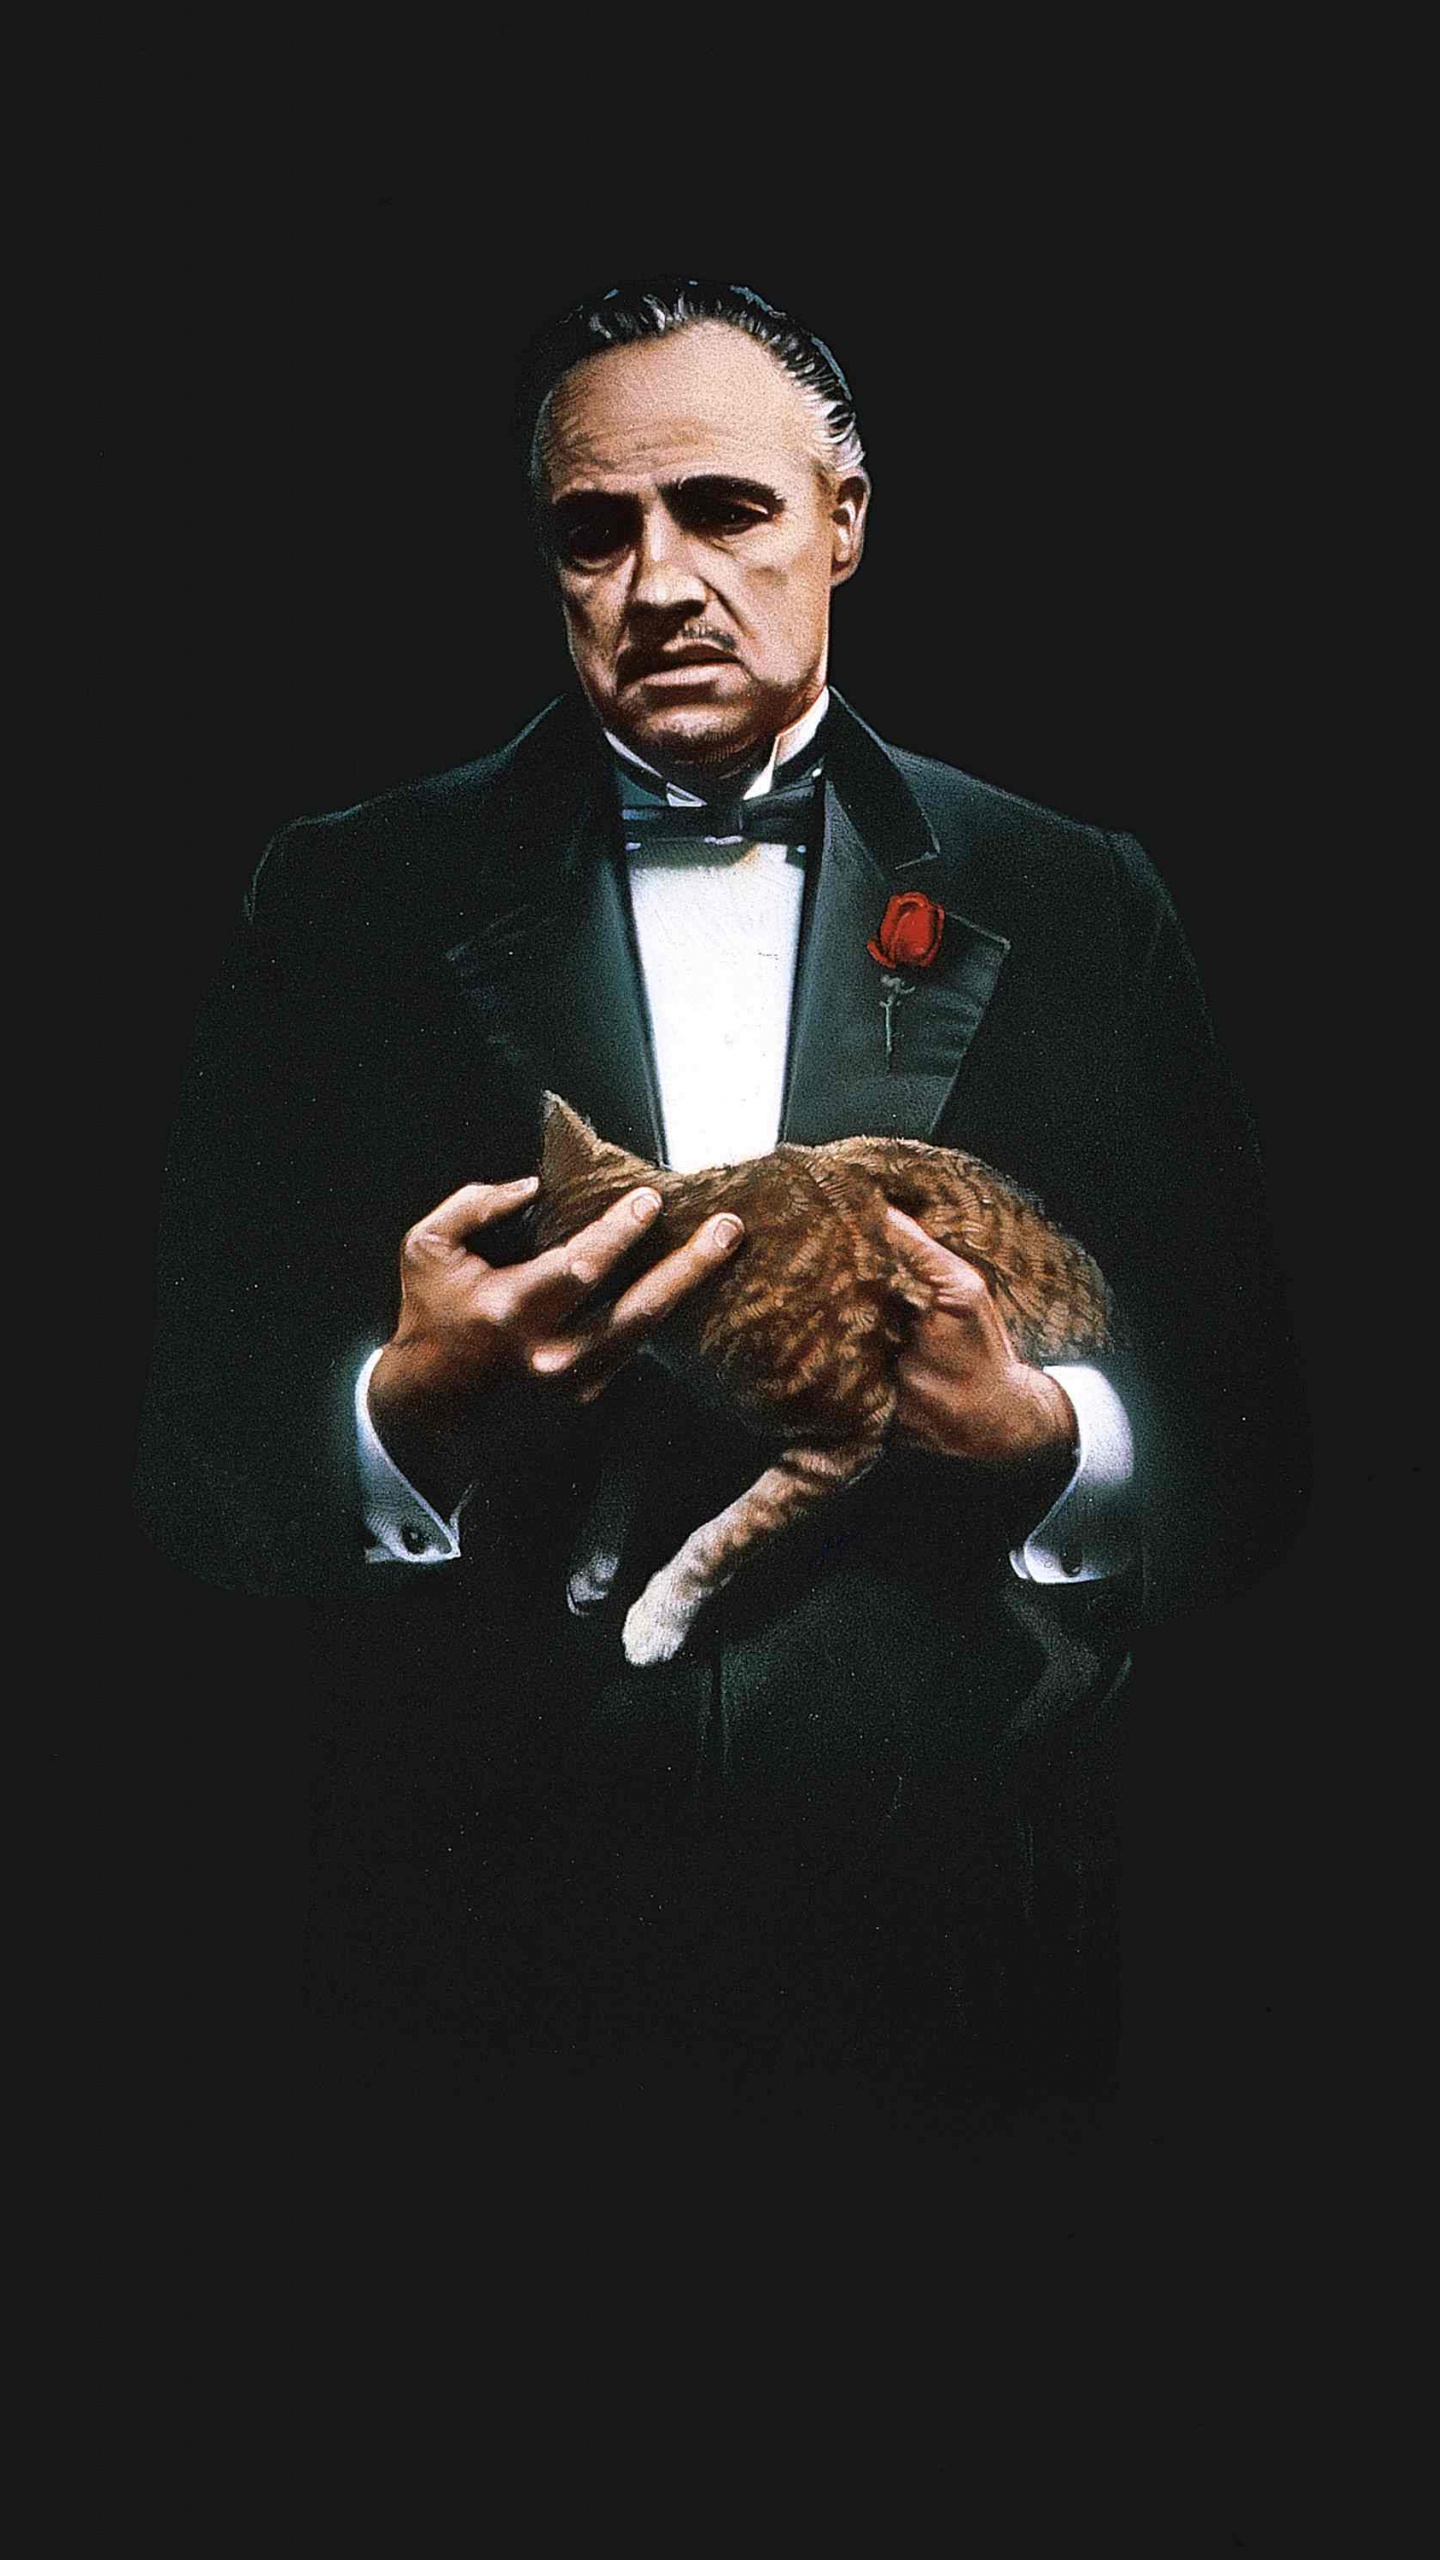 Godfather Don Corleone Art, al Pacino, The Godfather, Michael Corleone, Vito Corleone. Wallpaper in 1440x2560 Resolution